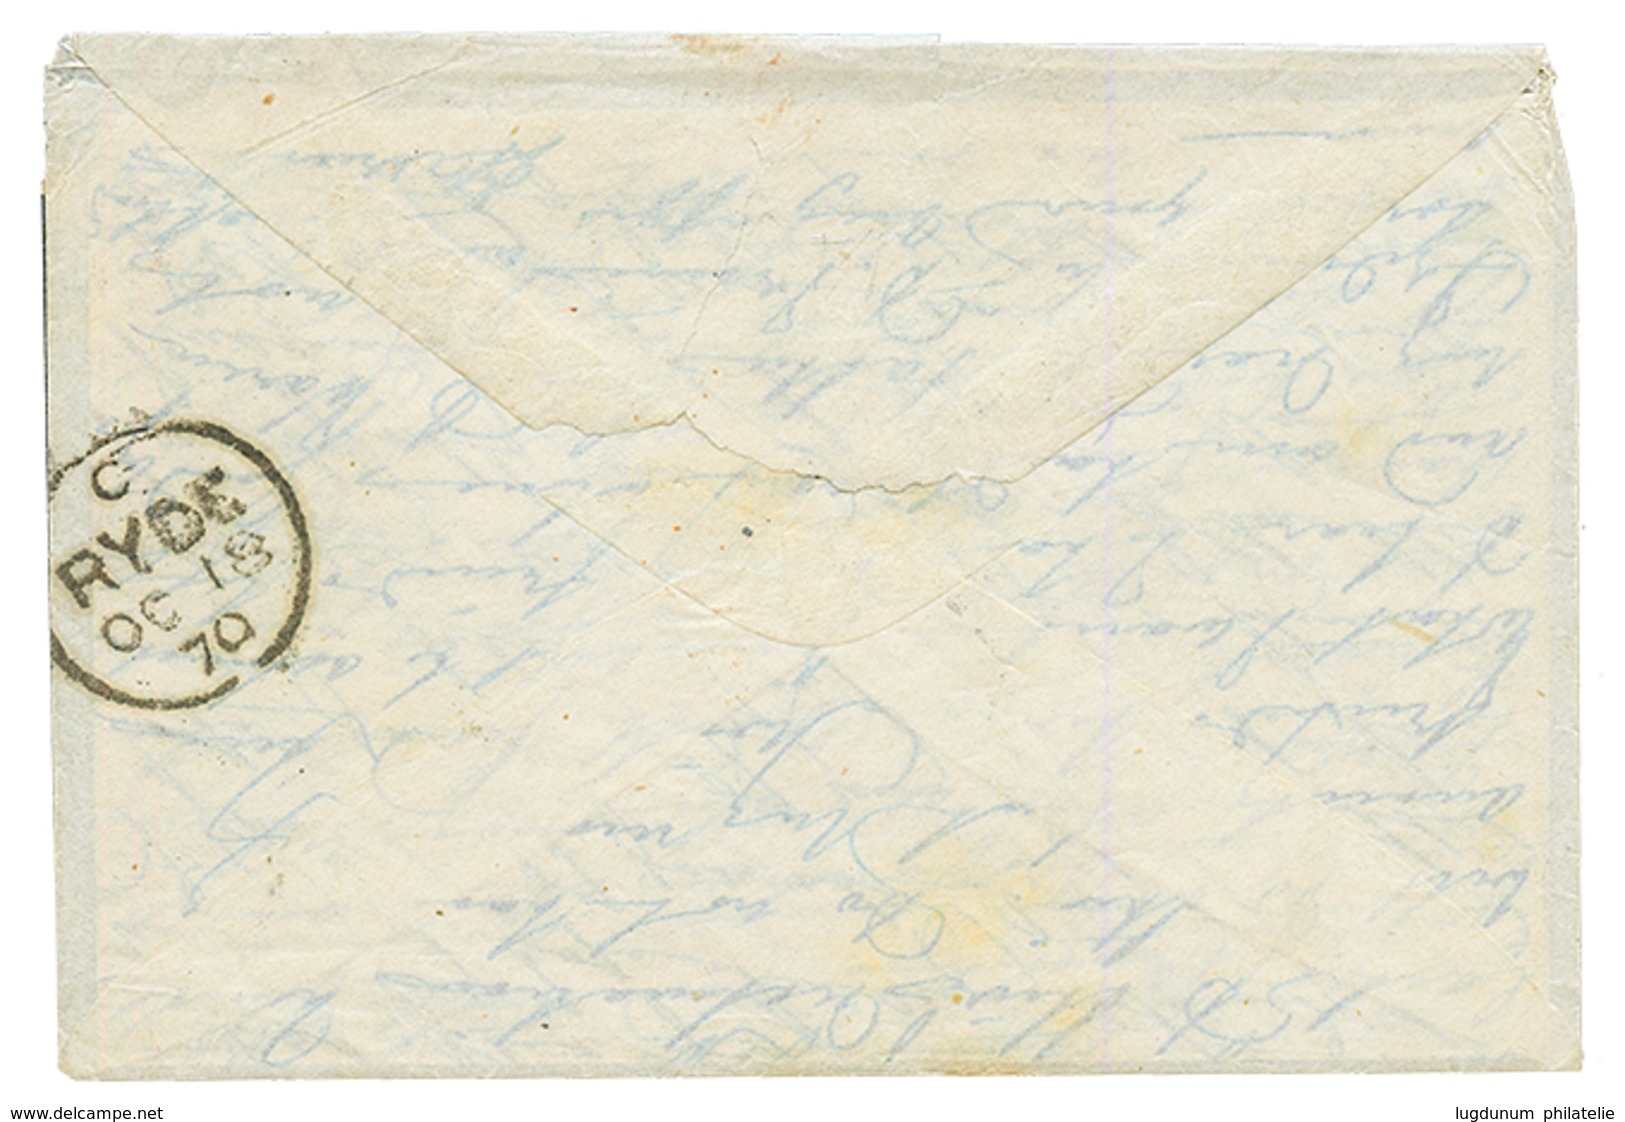 BALLON MONTE Pour L' ILE De WIGHT : 1870 30c(pd) + PARIS 24 Sept 70 Sur Enveloppe Avec Texte Pour L' ILE DE WIGHT. Verso - Oorlog 1870